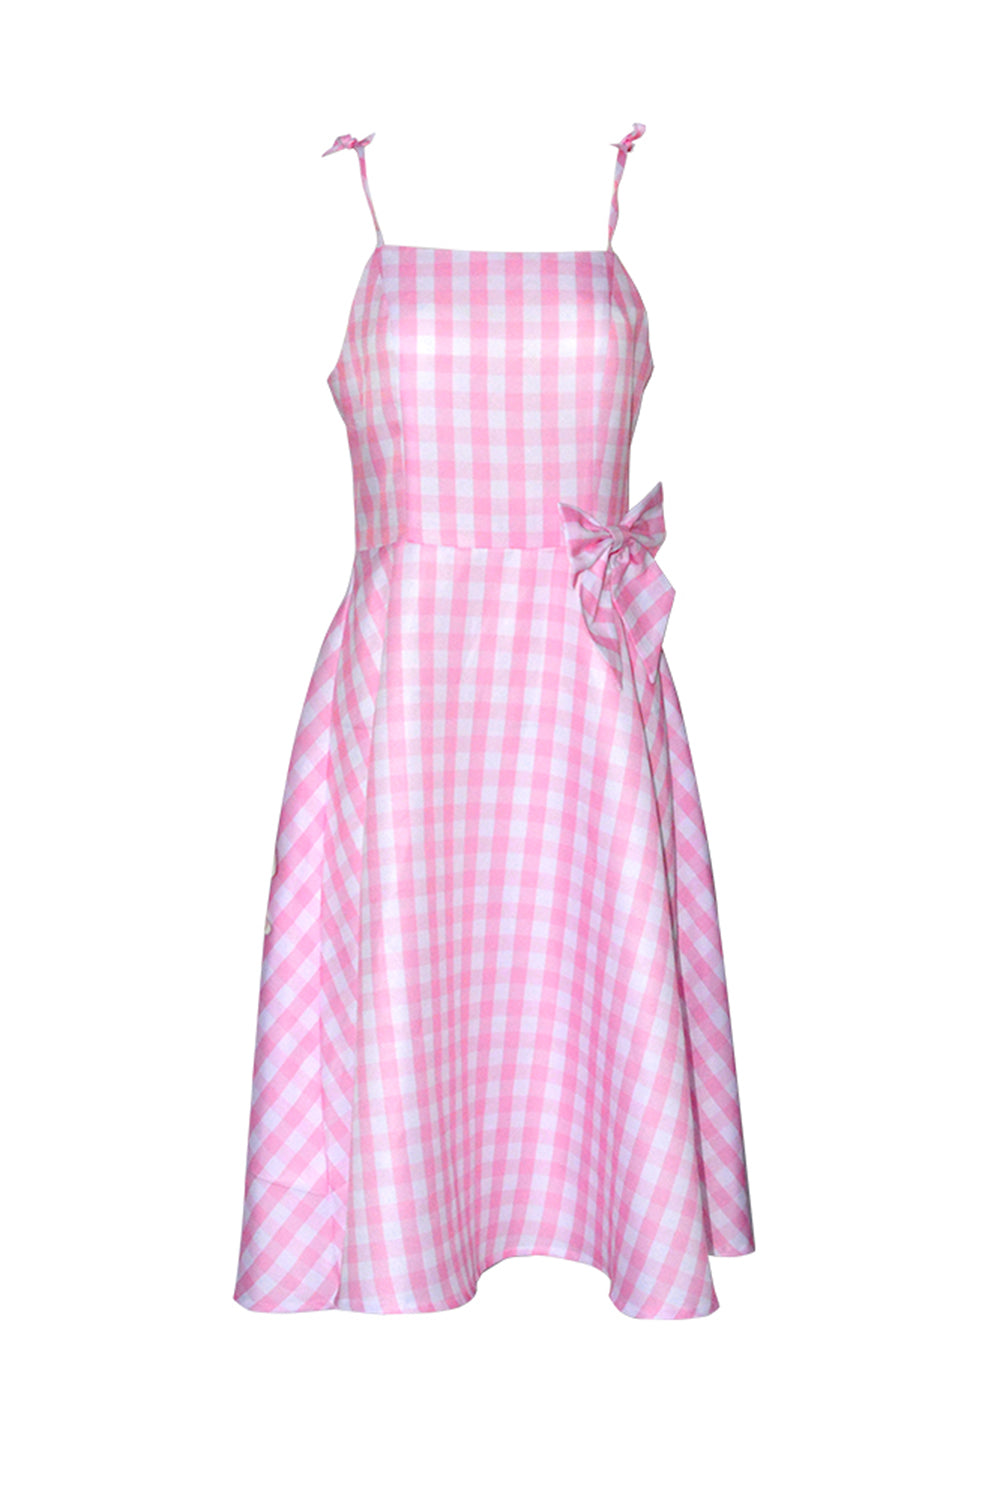 Roze Plaid Pin Up 1950s Dress Accessoire Set